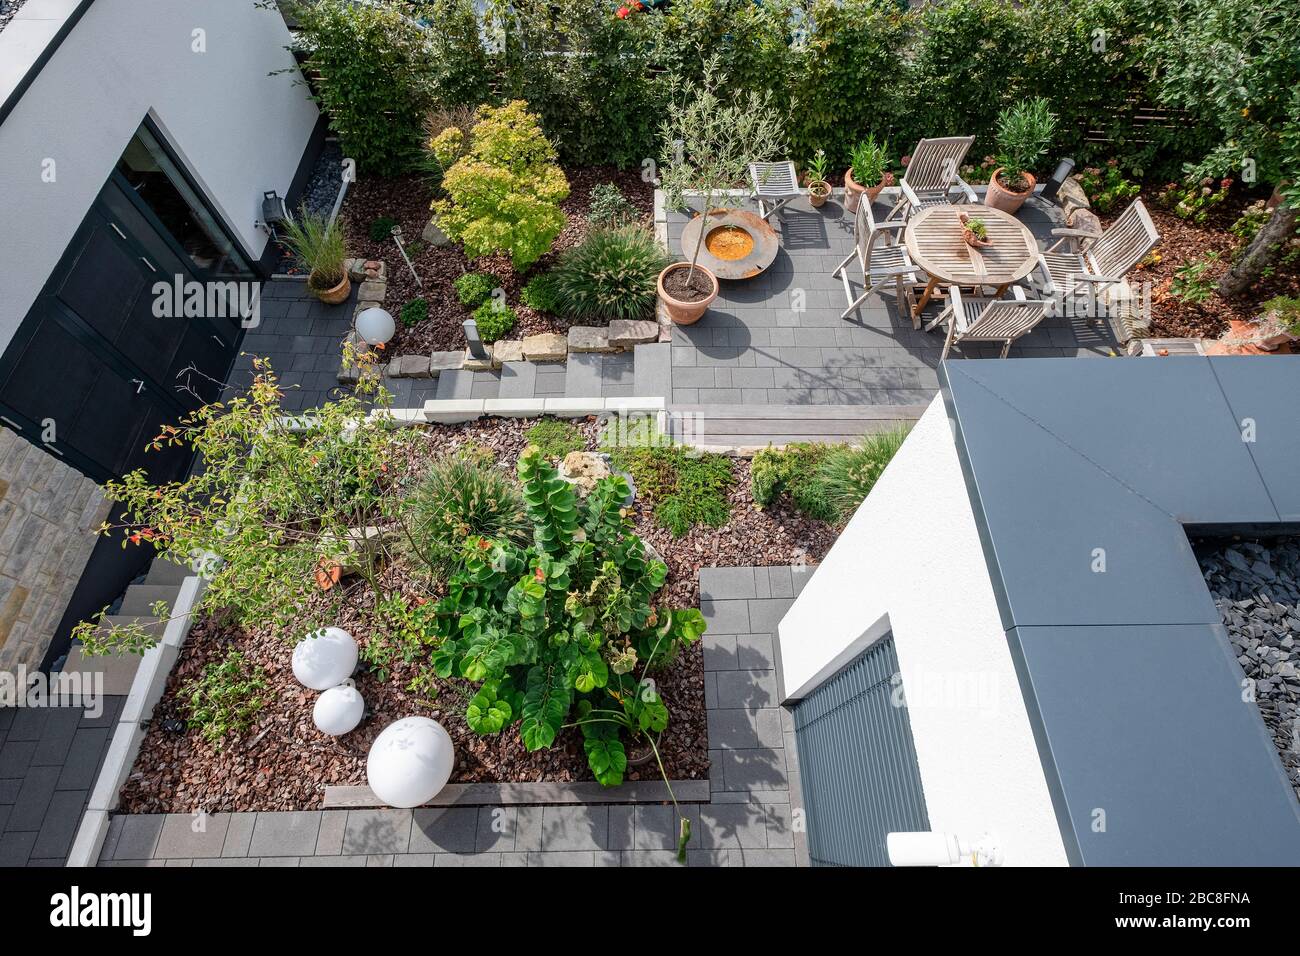 Überblick über eine gepflegte Gartenlandschaft mit Terrasse, Pflanzenbeeten und Zufahrtswegen Stockfoto